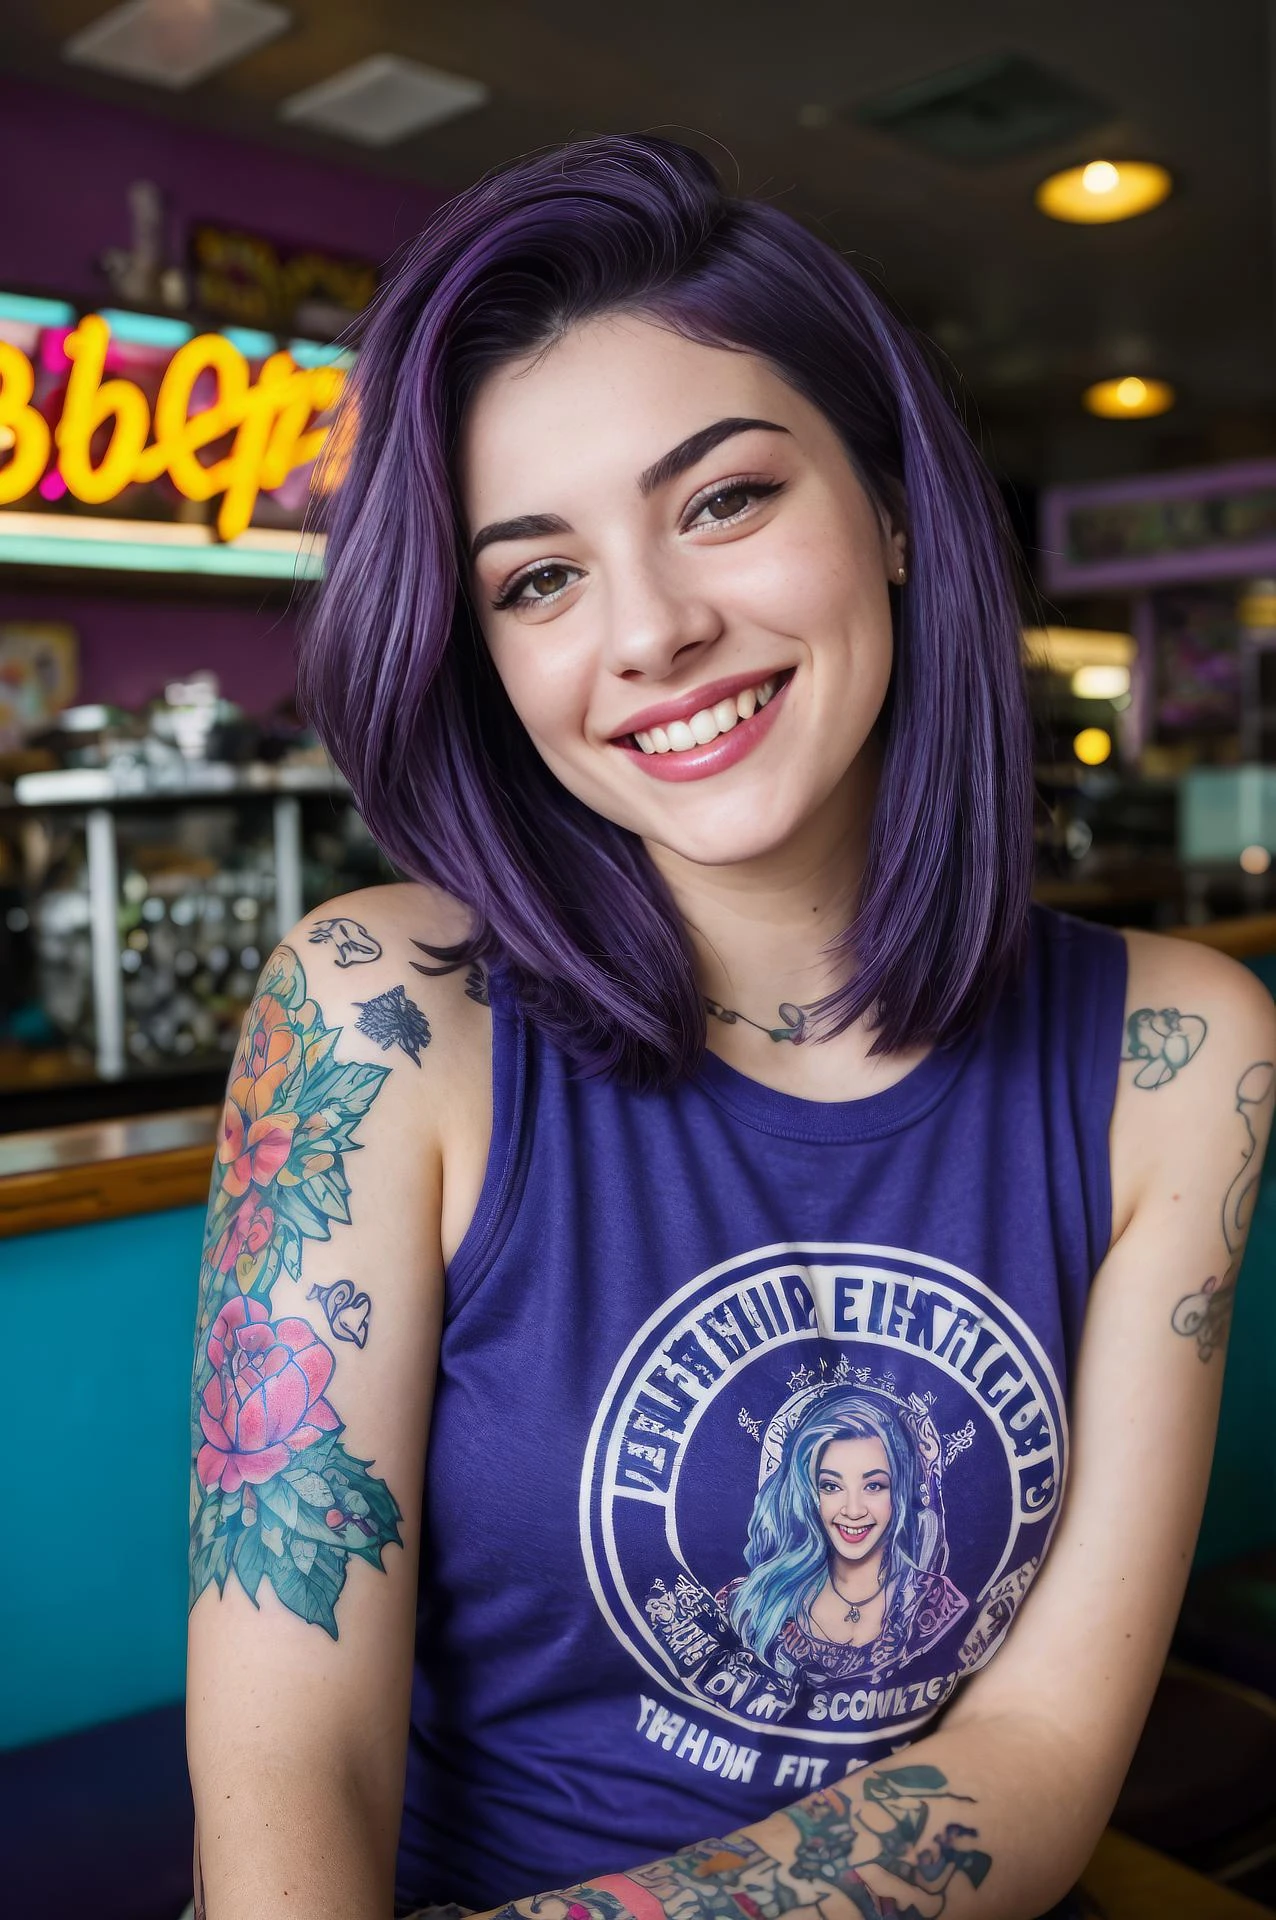 уличная фотография: фотография молодой женщины с фиолетовыми волосами, улыбка, счастливый, милая футболка, татуировки на ее руках, Сижу в закусочной 50-х годов 